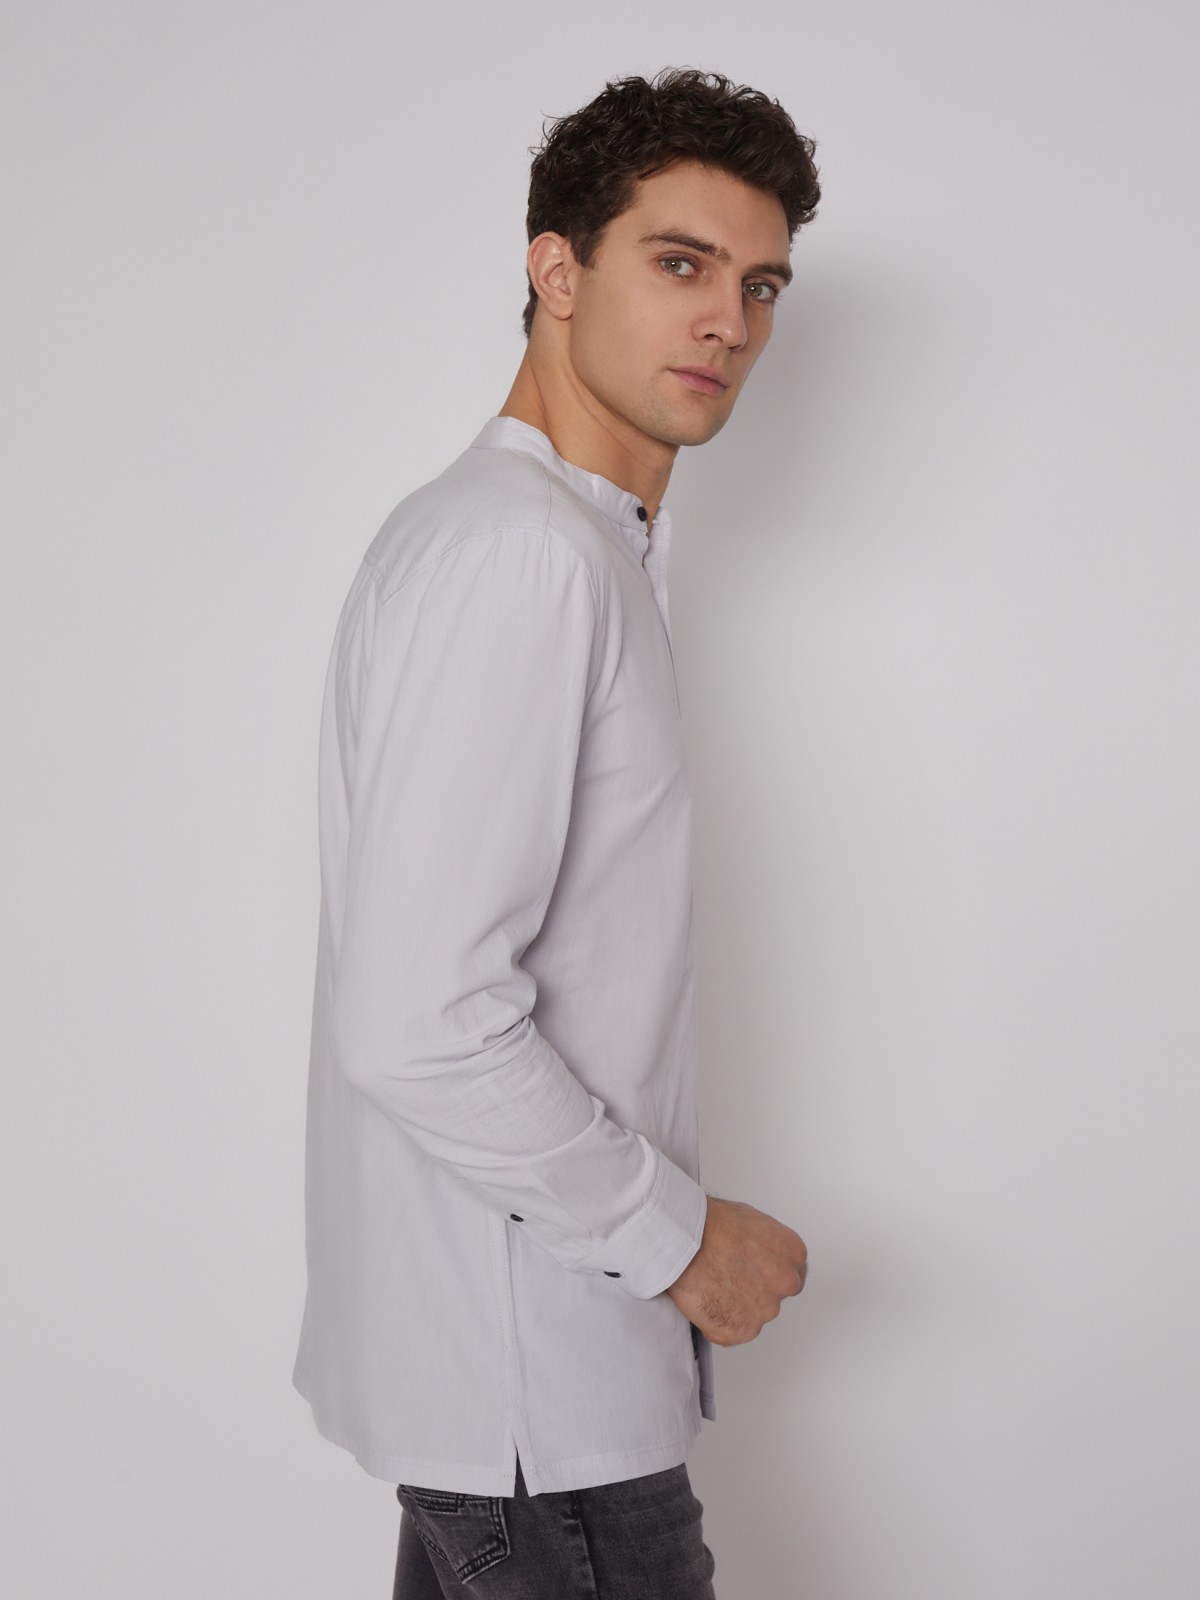 Рубашка с воротником-стойкой zolla 21221217Y031, цвет светло-серый, размер S - фото 5